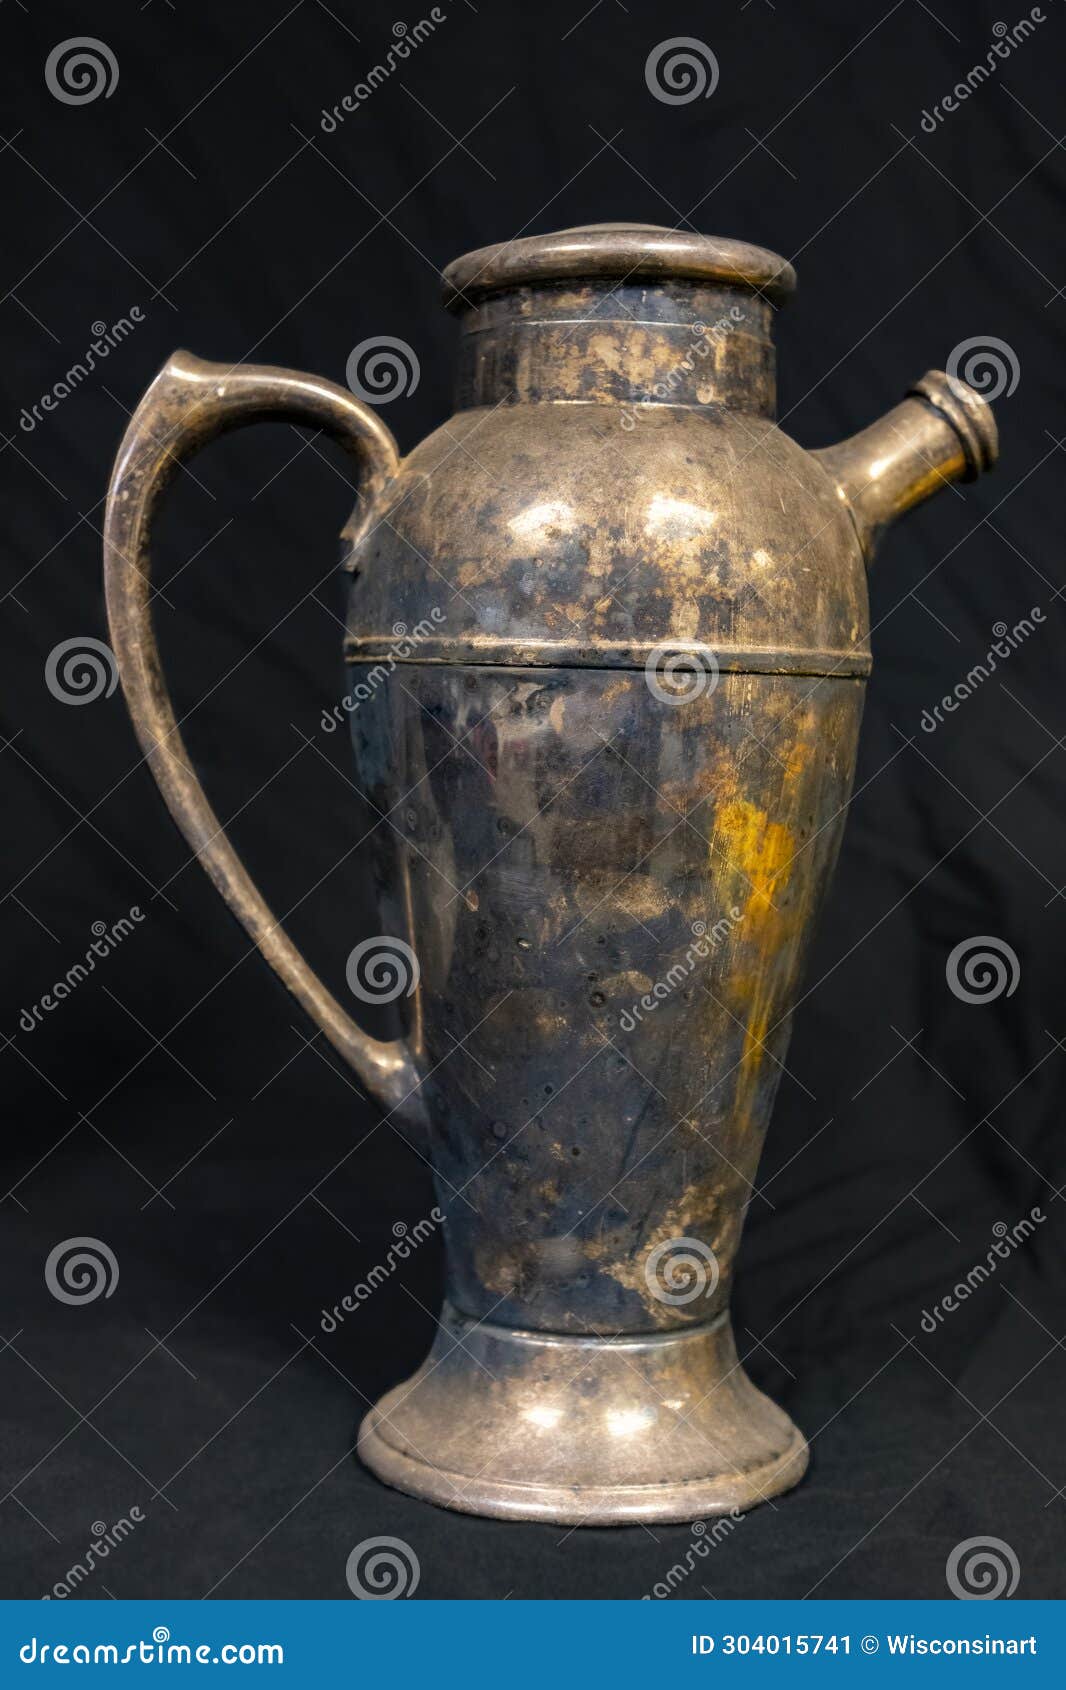 old metal vase, rough patina